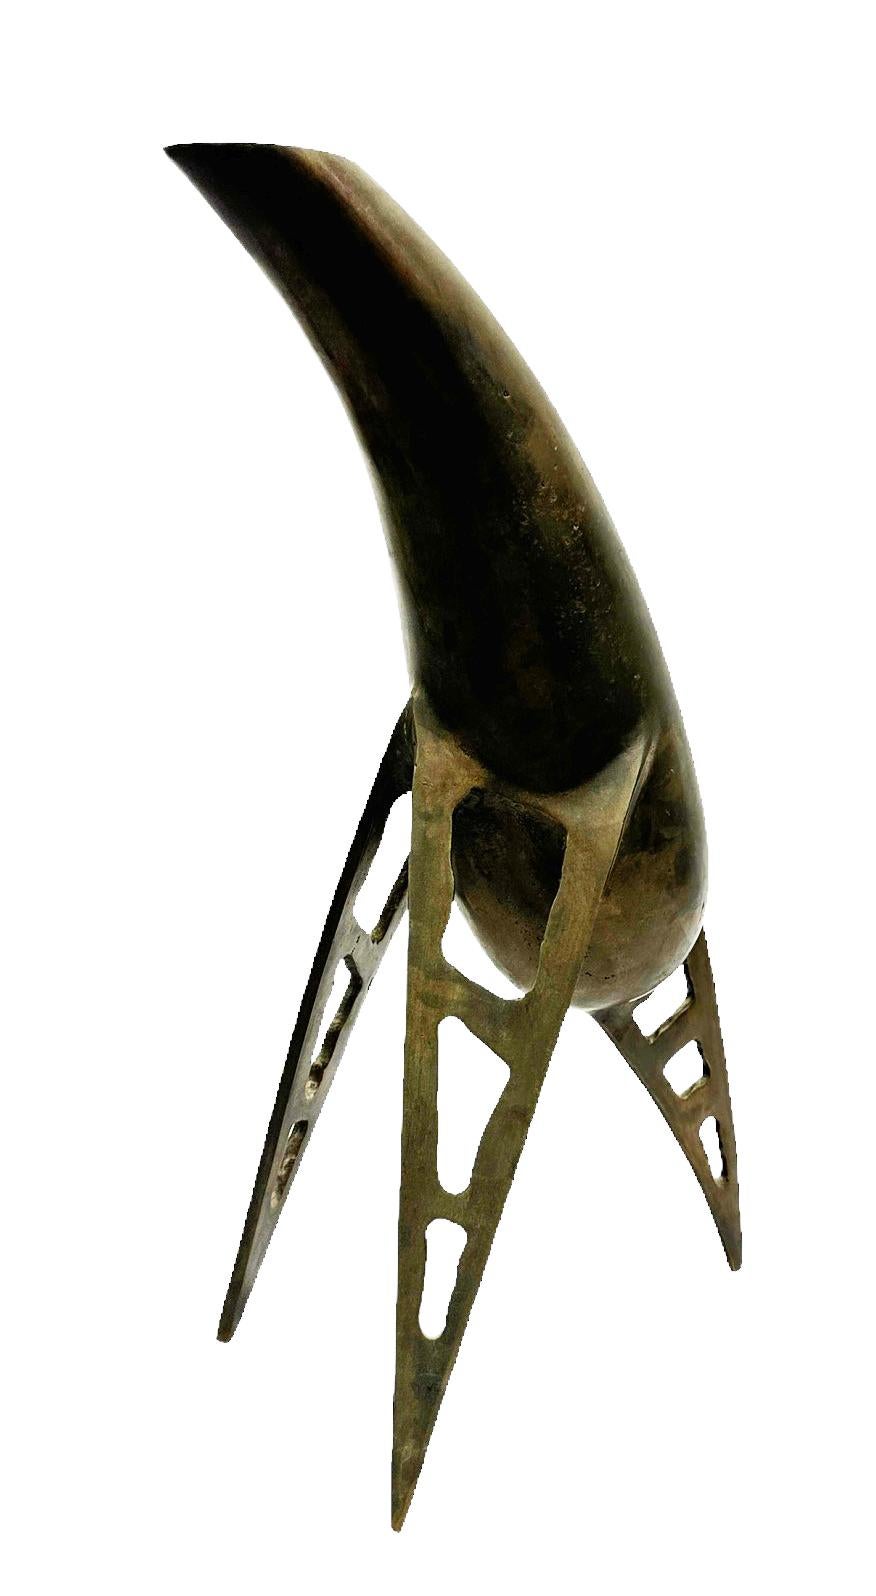 Italian Bronze Vessel, Sculptural Object by Raju Peddada - 